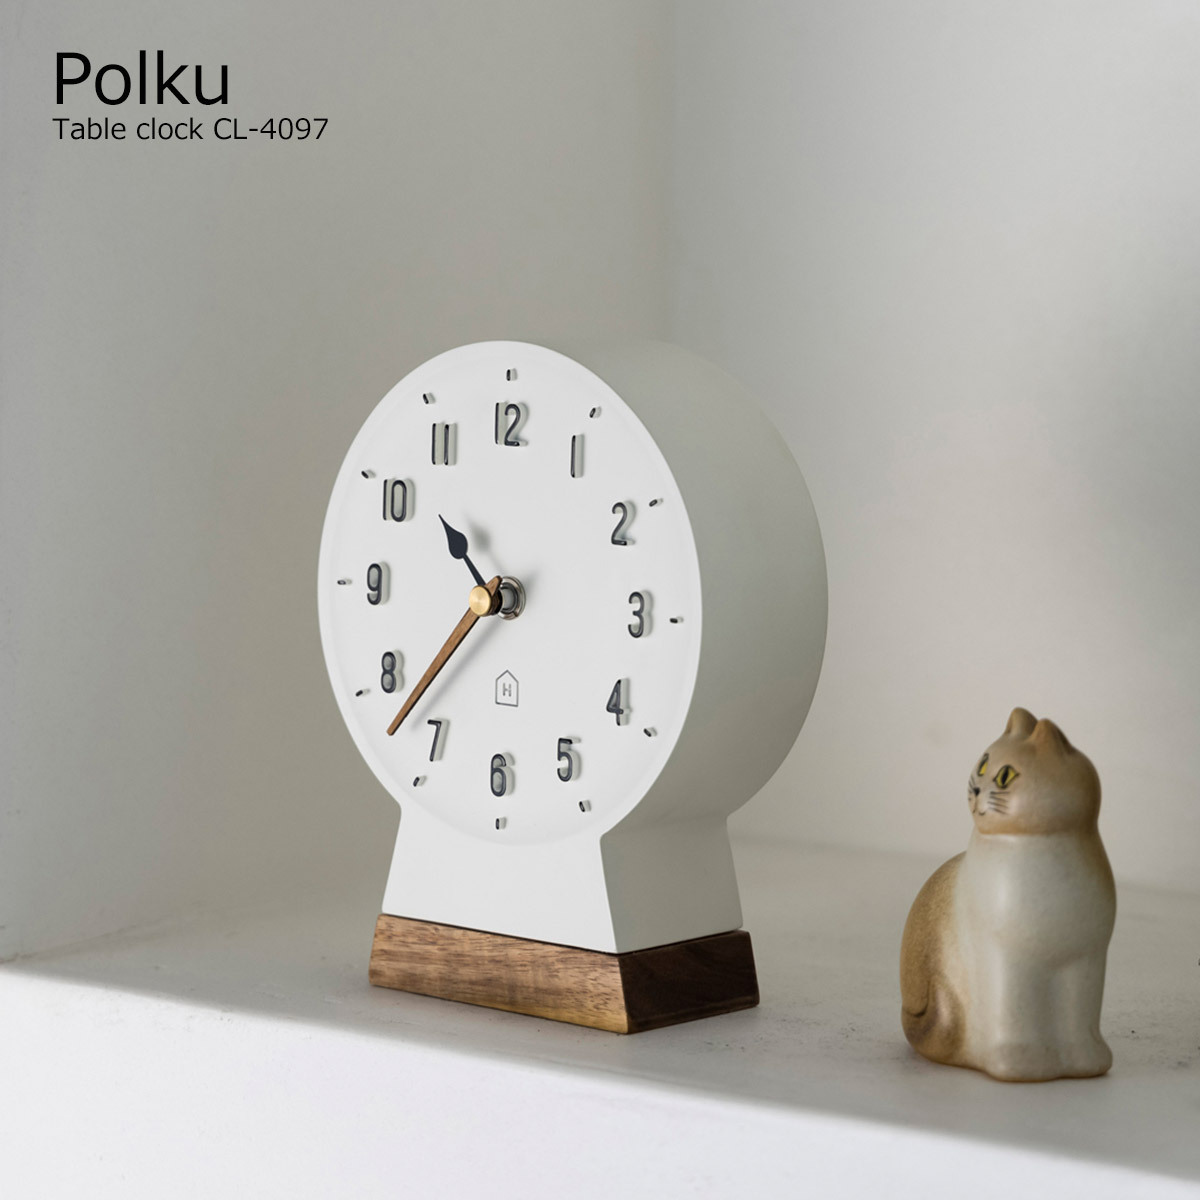 置き時計 おしゃれ 北欧 かわいい 置時計 テーブルクロック ポルク Polku CL-4097 リビング 玄関 寝室 一人暮らし オブジェ かわいい  白 オシャレ シンプル